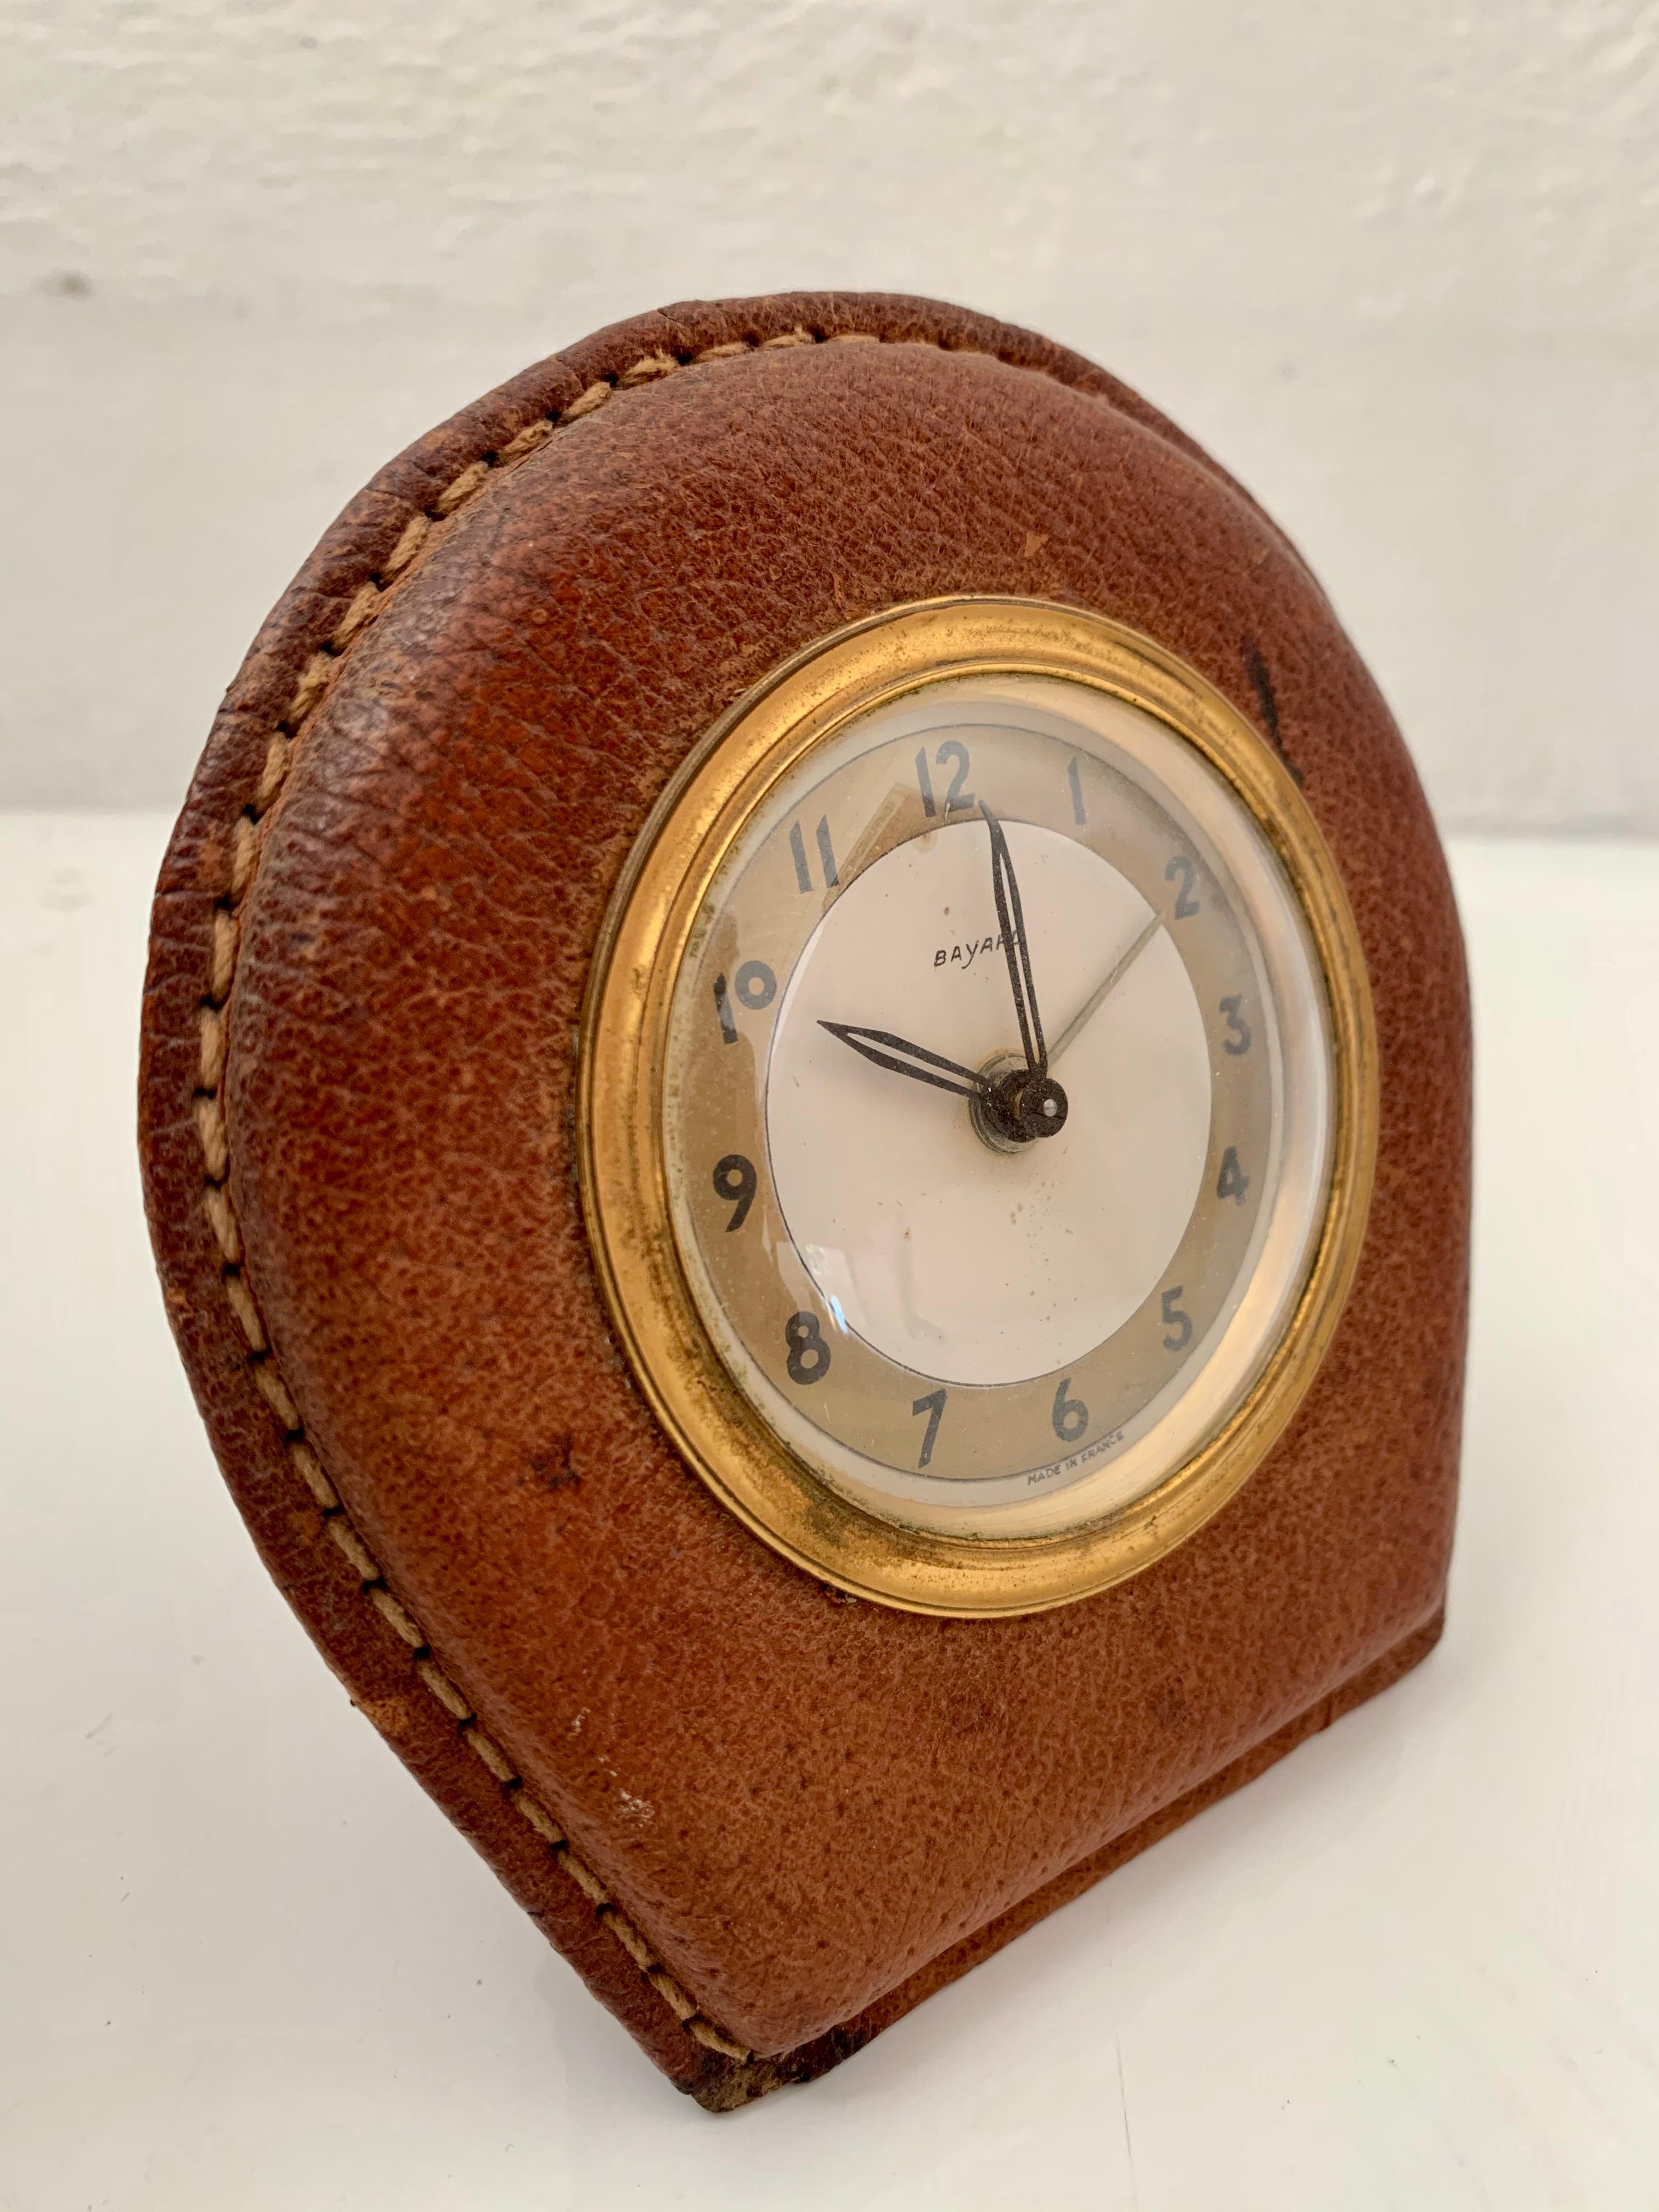 Belle pendule de bureau en cuir de selle français par Bayard dans le style de Jacques Adnet. Excellent état vintage. Il indique l'heure et dispose d'une alarme. Grande patine du laiton et du cuir.